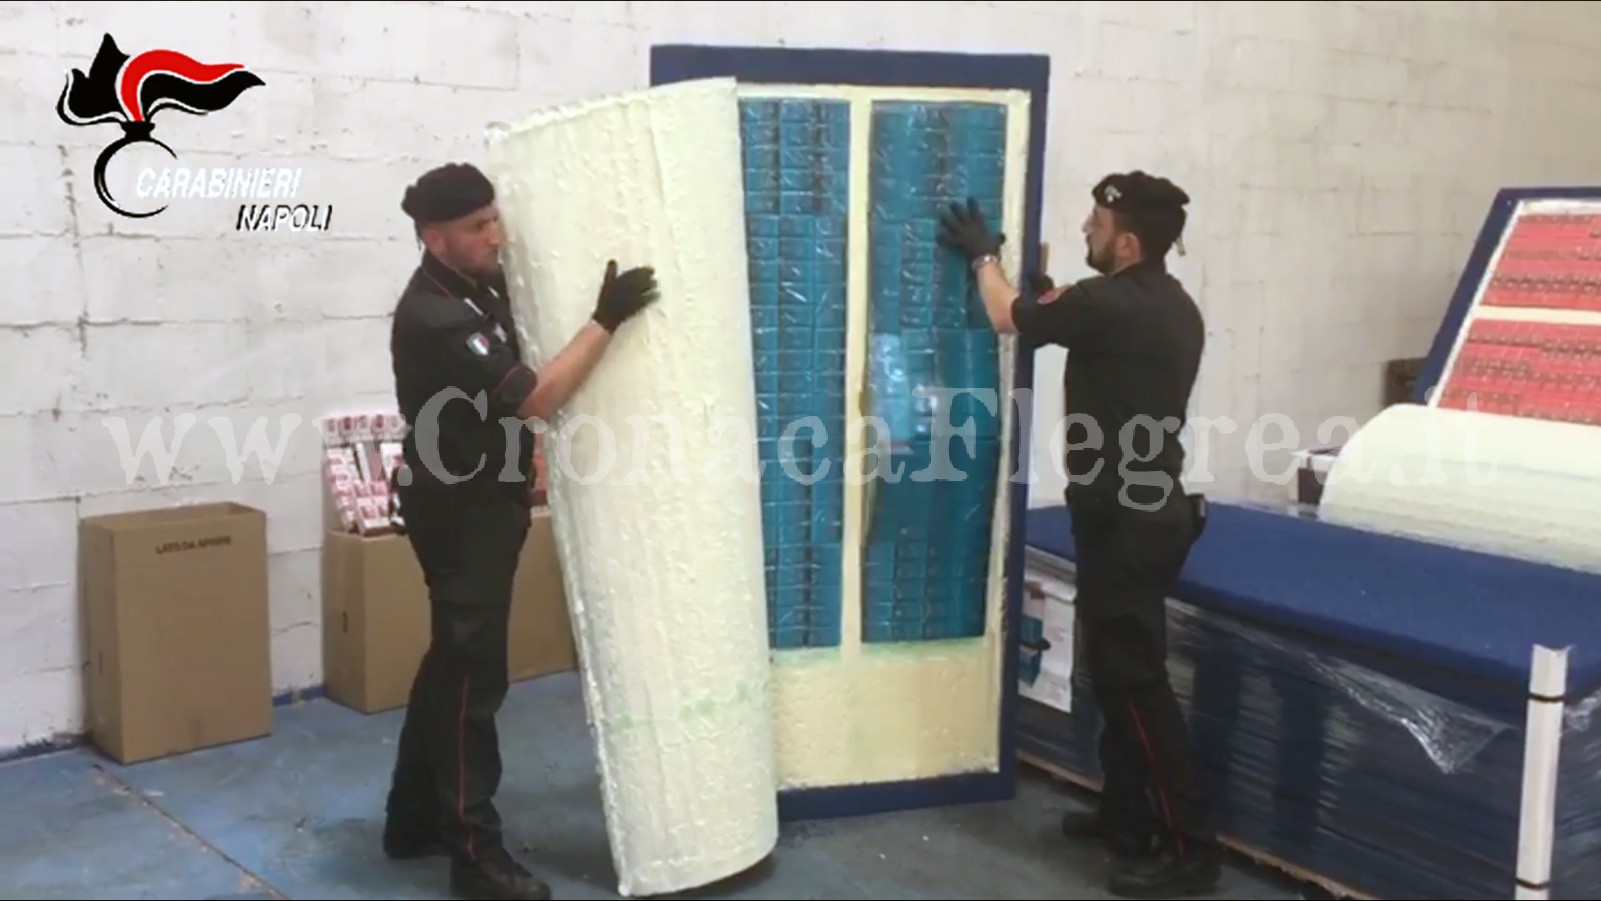 Sigarette di contrabbando nascoste in finti pannelli isolanti: 5 arresti